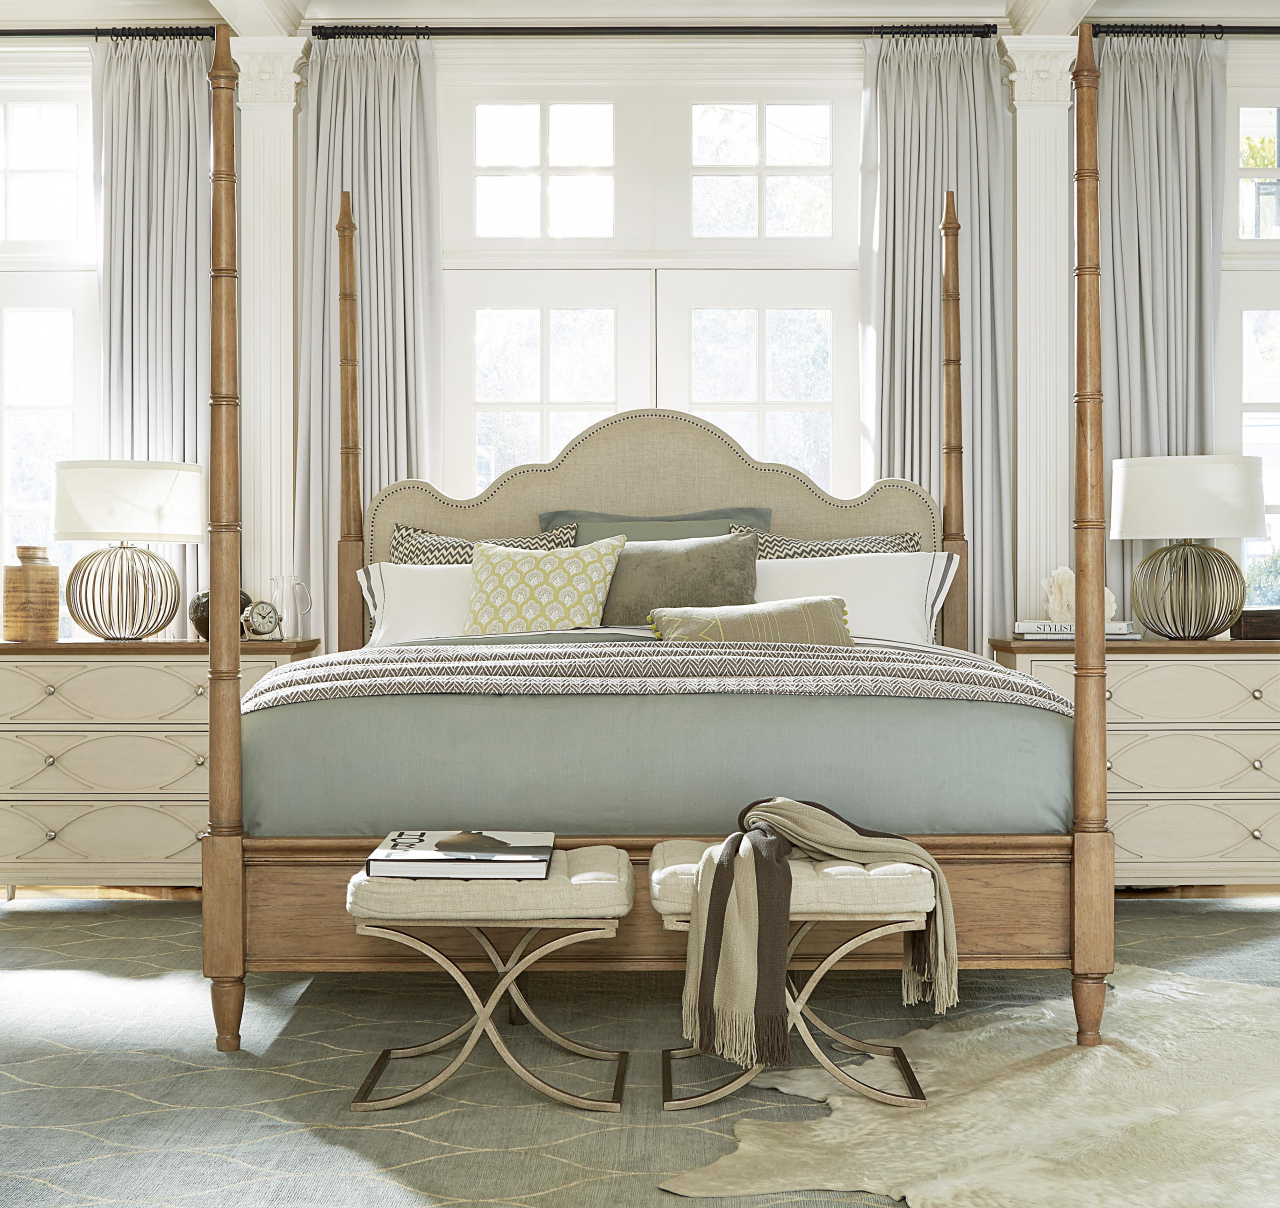 El Dorado King Bedroom Sets Moderne Muse 414 Universal Hudson S intended for proportions 1280 X 1208